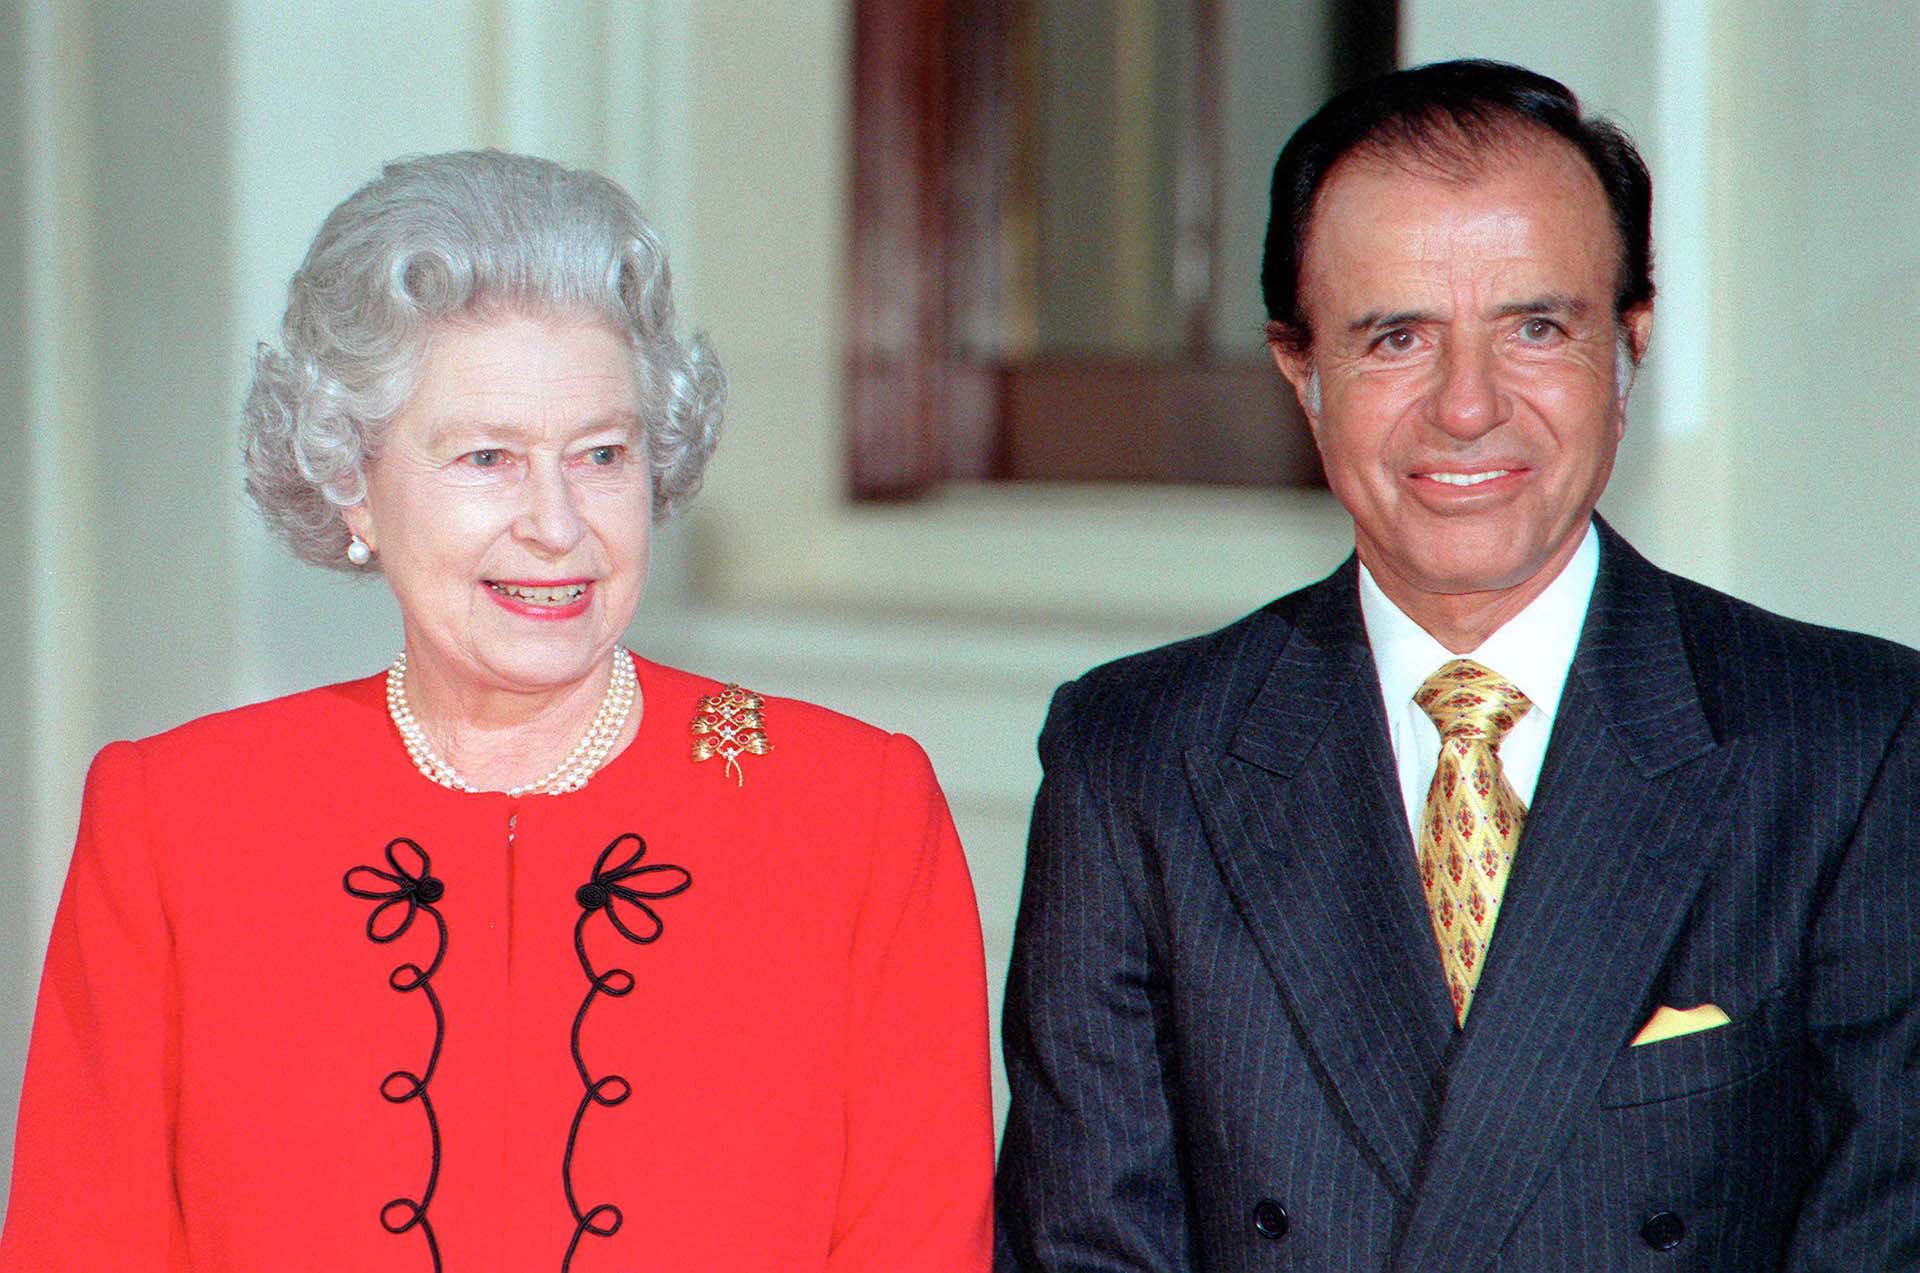 En 1998, Menem visitó el Palacio de Buckingham, donde fue recibido por la reina Isabel II